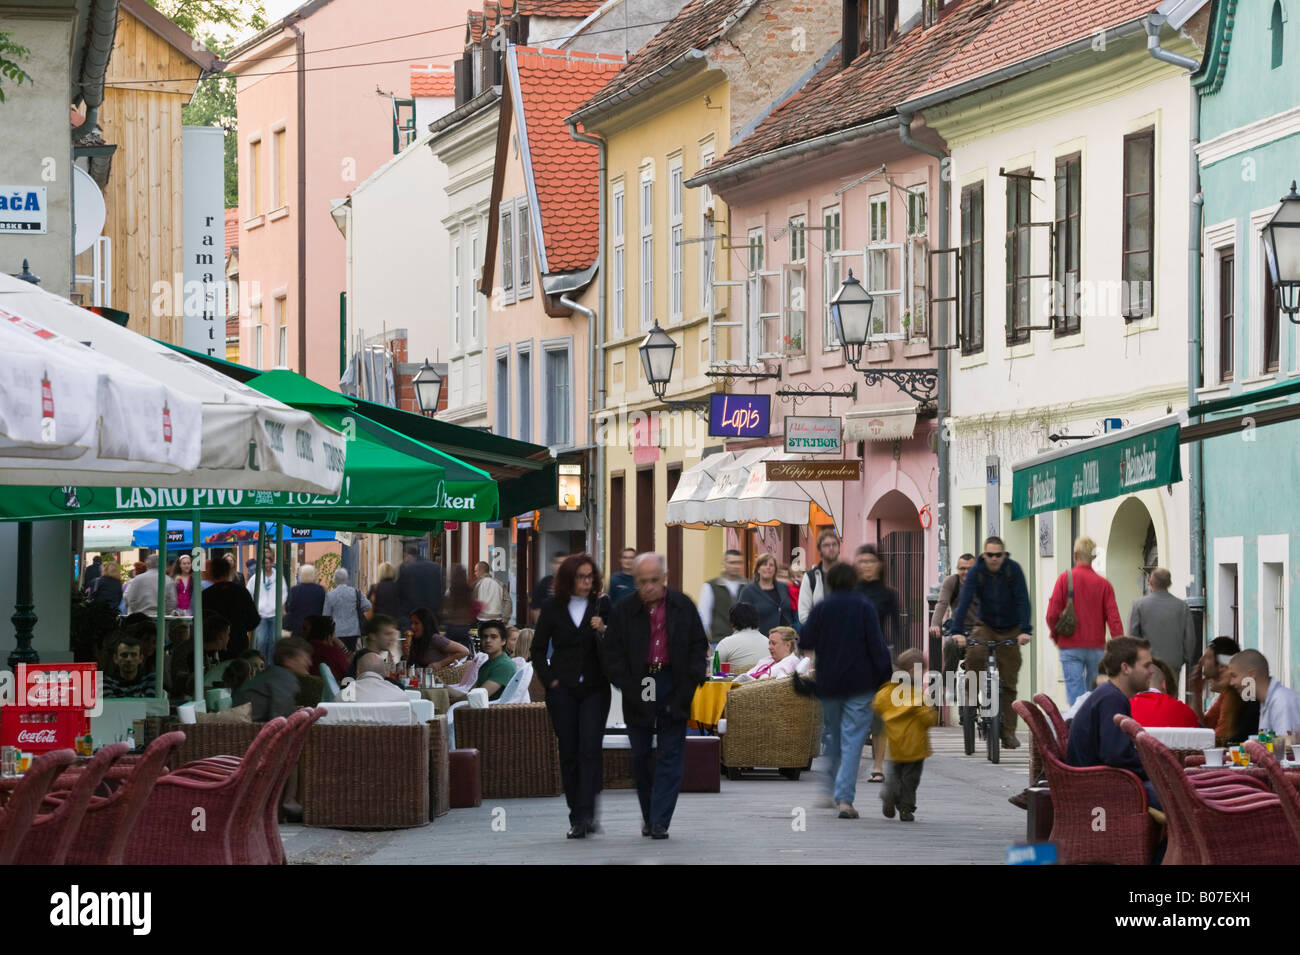 Croatia, Zagreb, Old Town Zagreb, Tkalciceva Street, Cafe/Restaurant Stock Photo